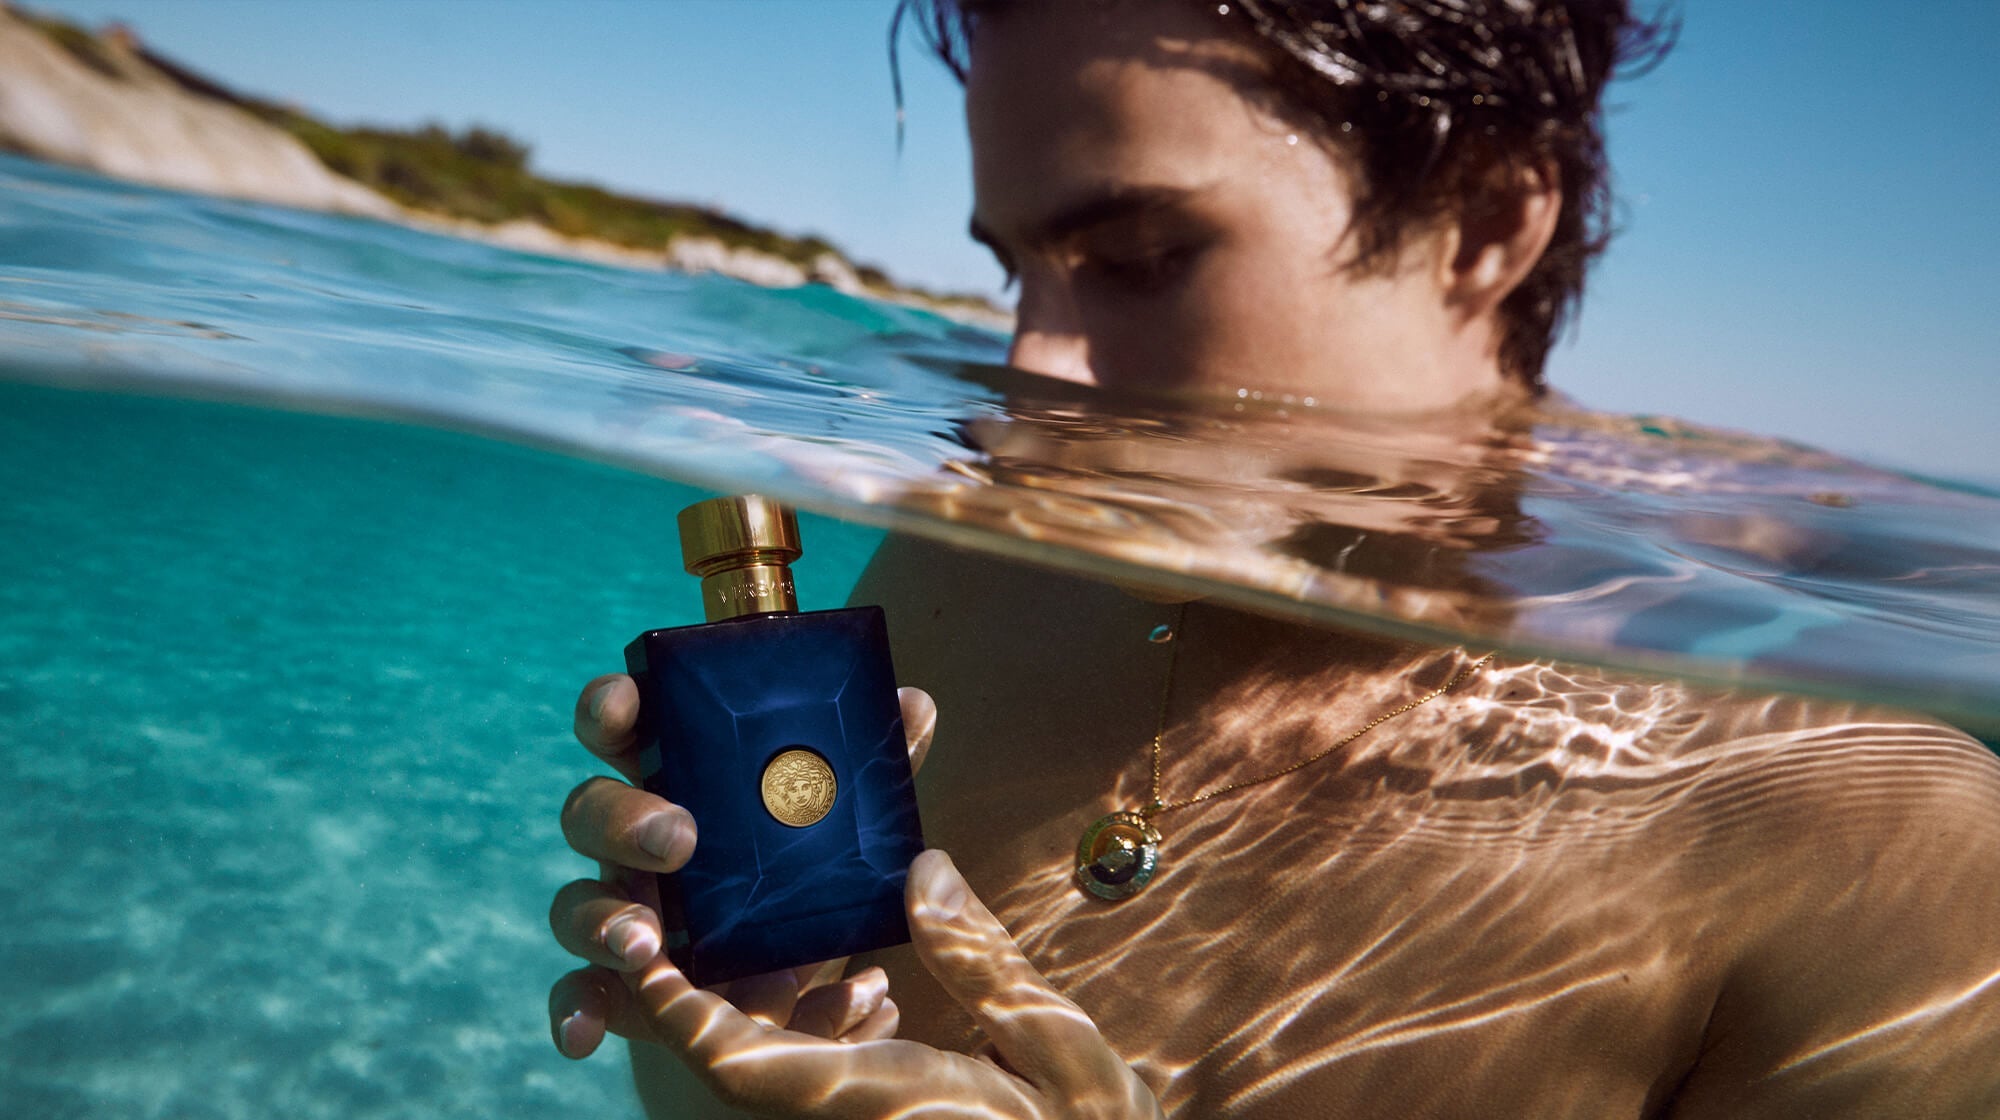 The Best Carolina Herrera Perfumes, According to Experts